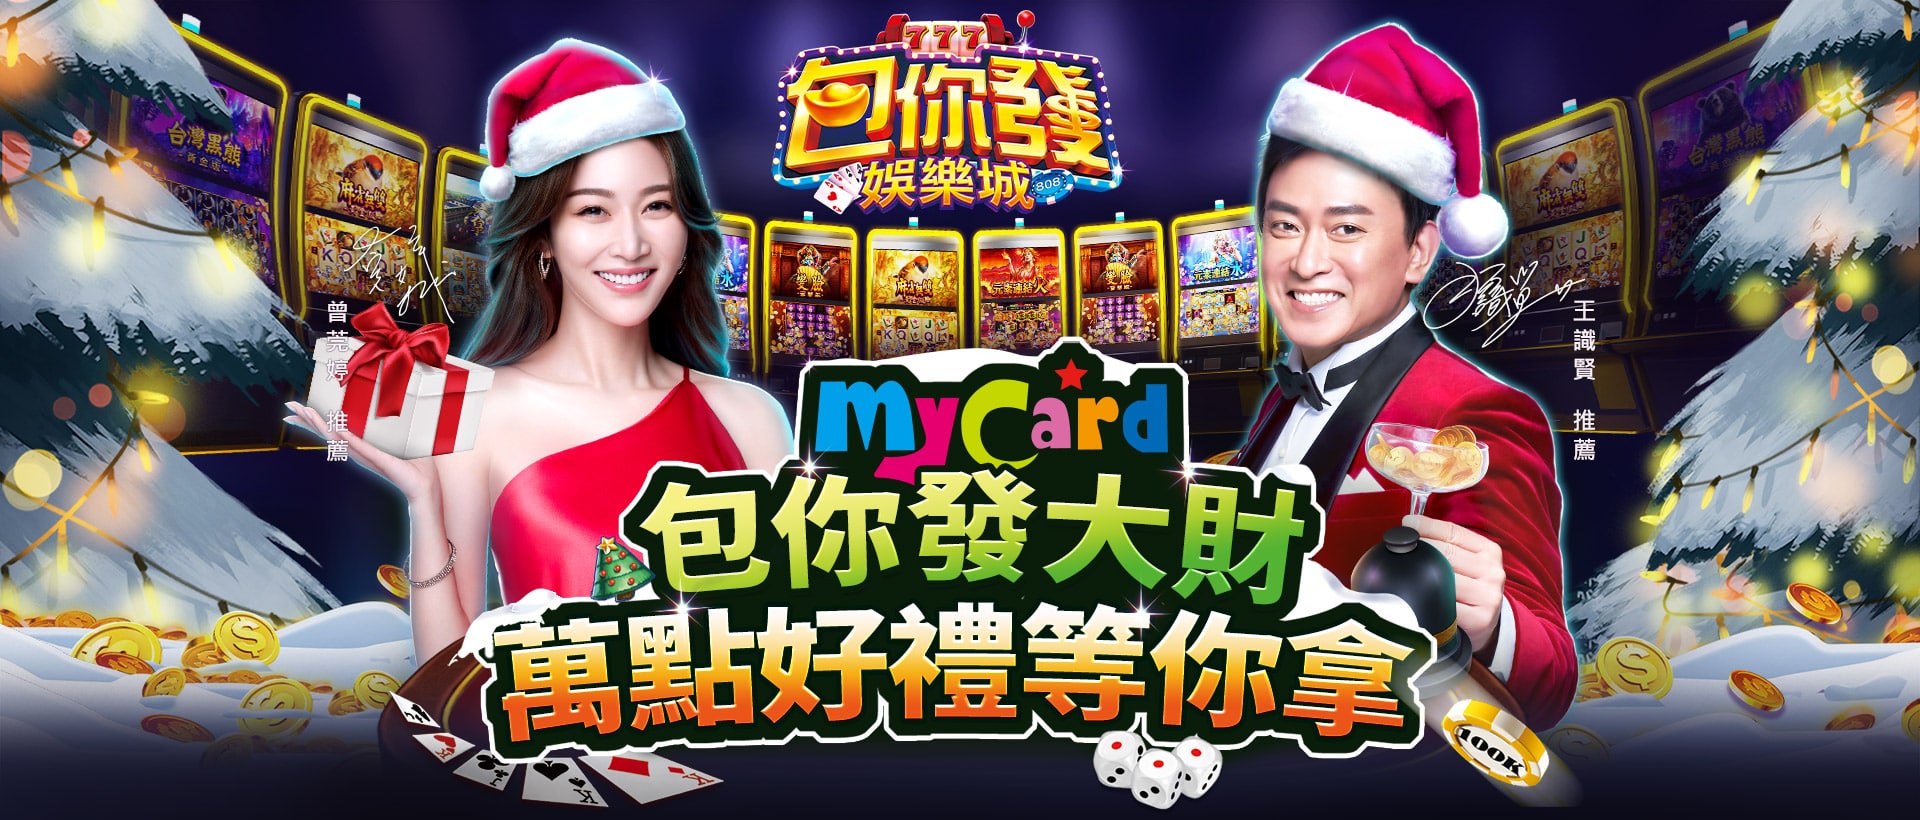   《包你發娛樂城》MyCard儲值優惠 | 中華電信